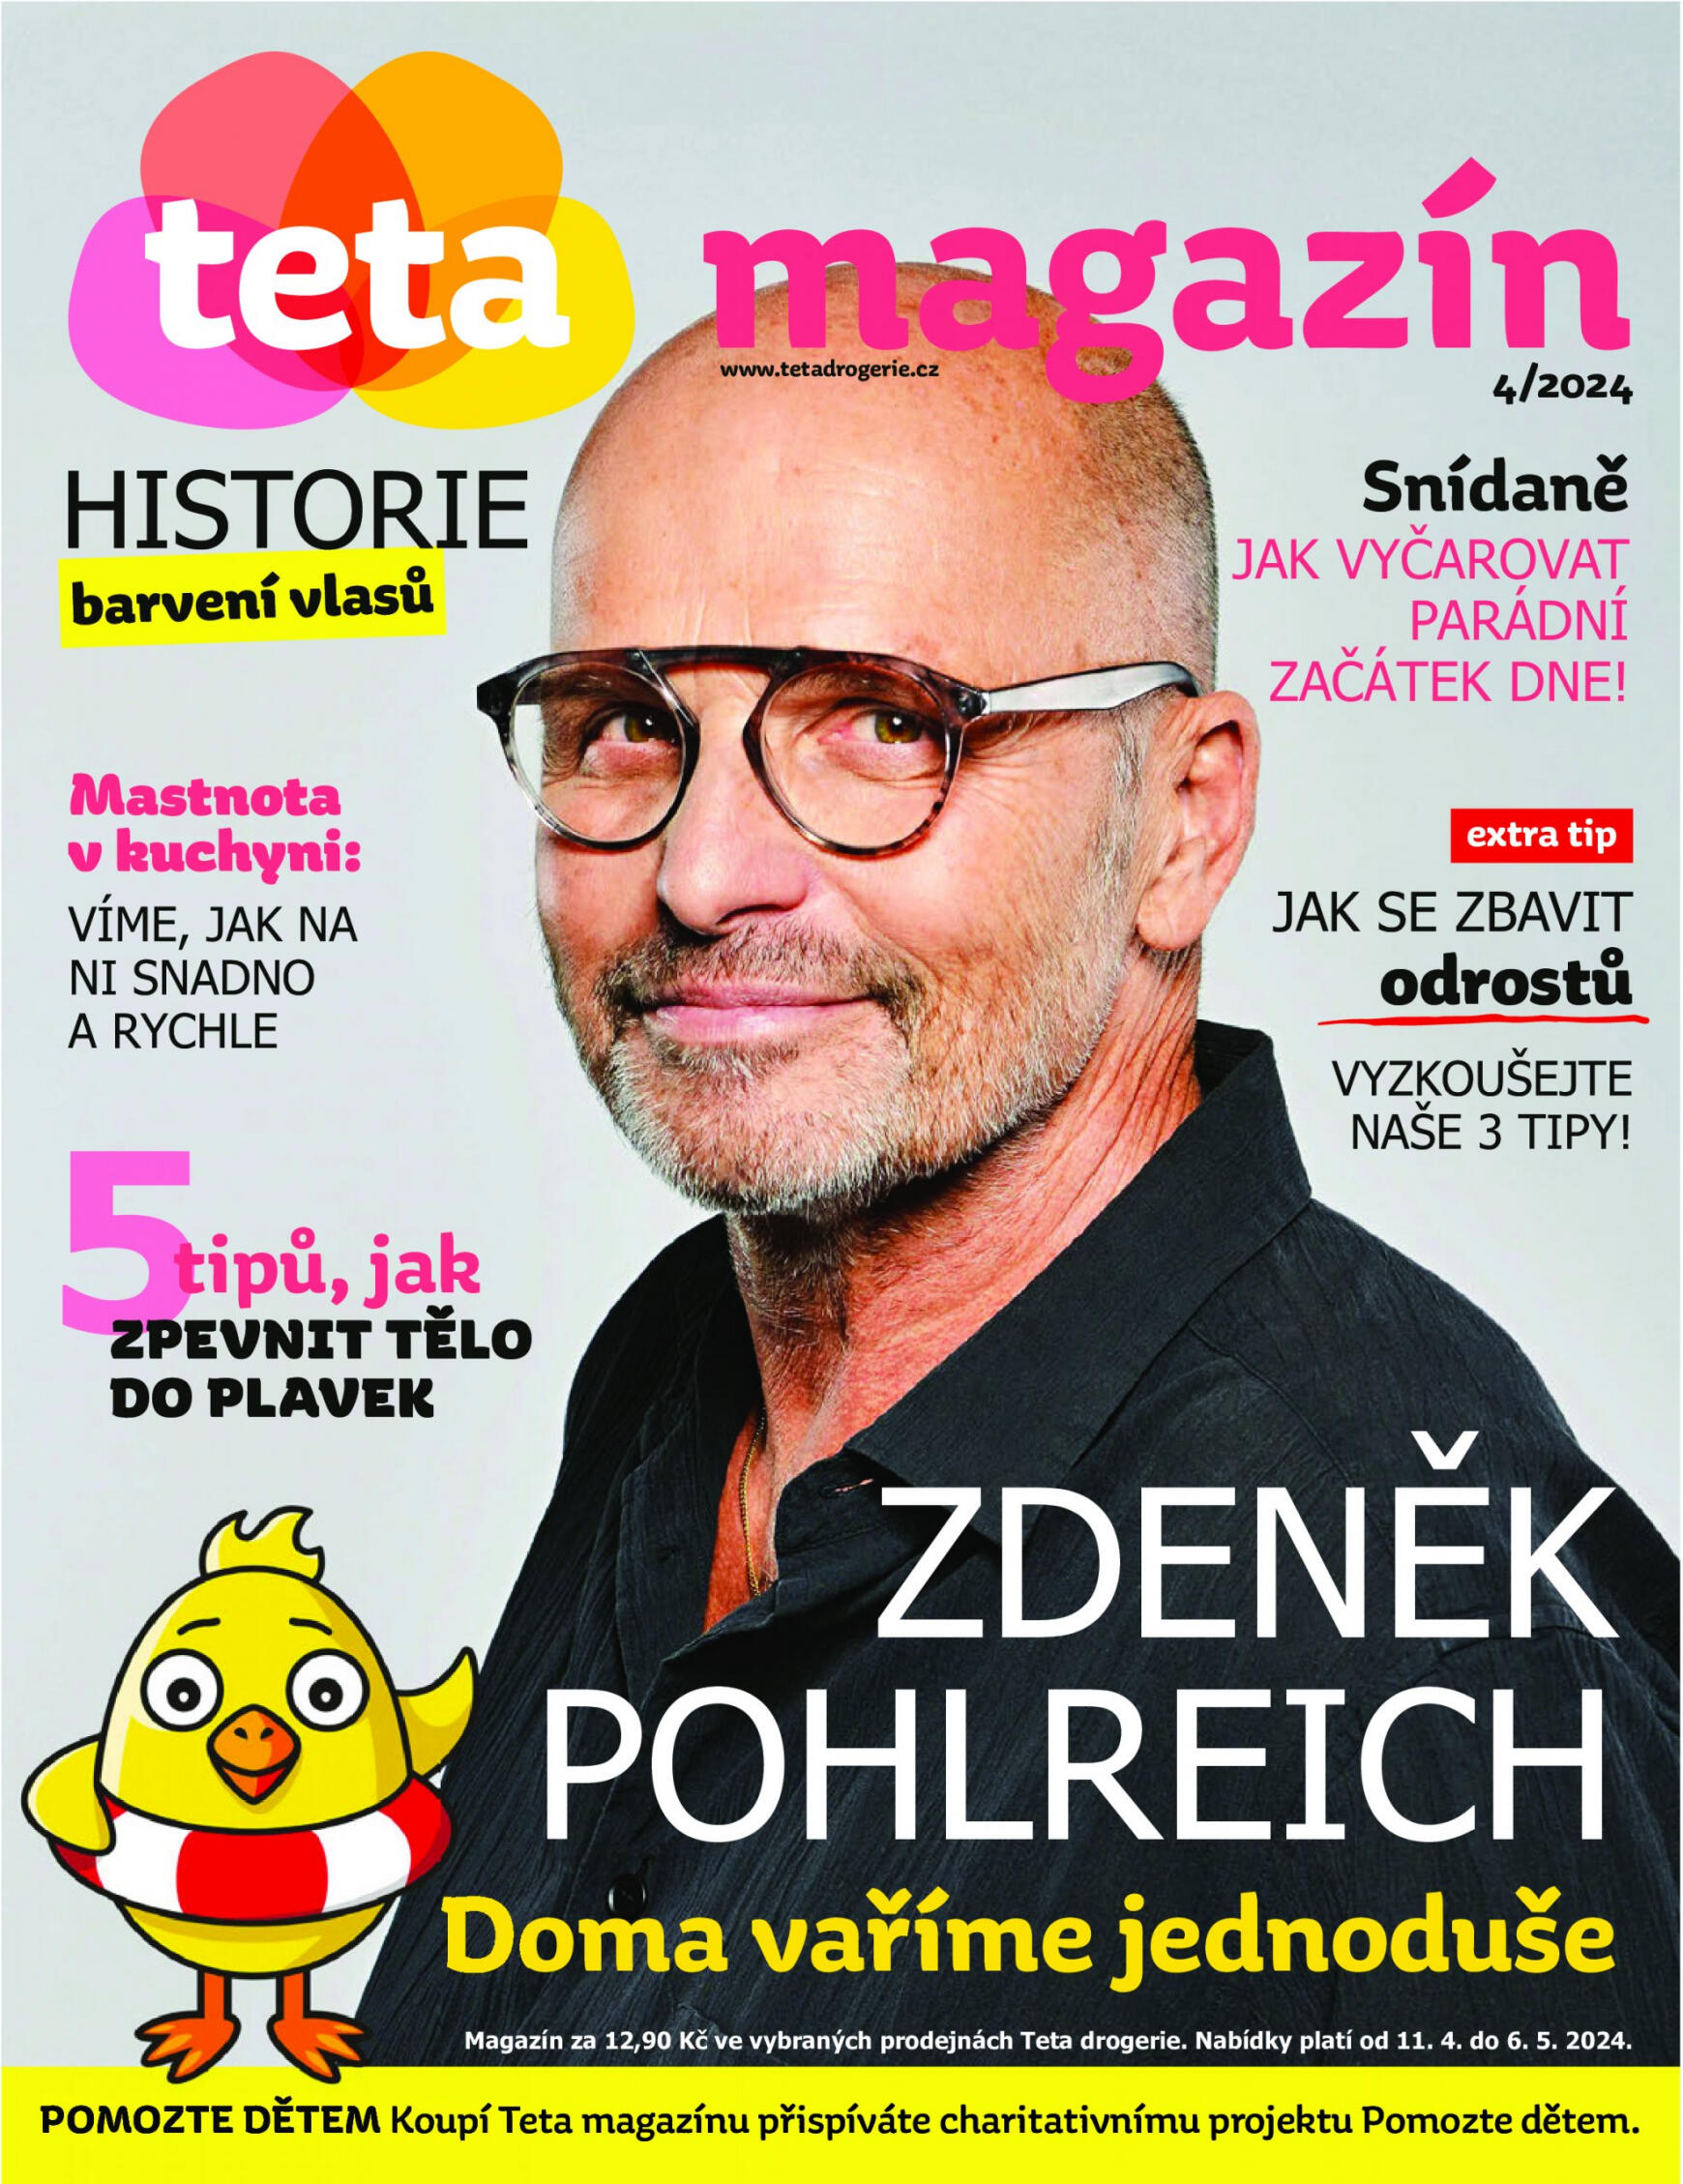 teta-drogerie - Leták Teta drogerie magazín aktuální 11.04. - 06.05.